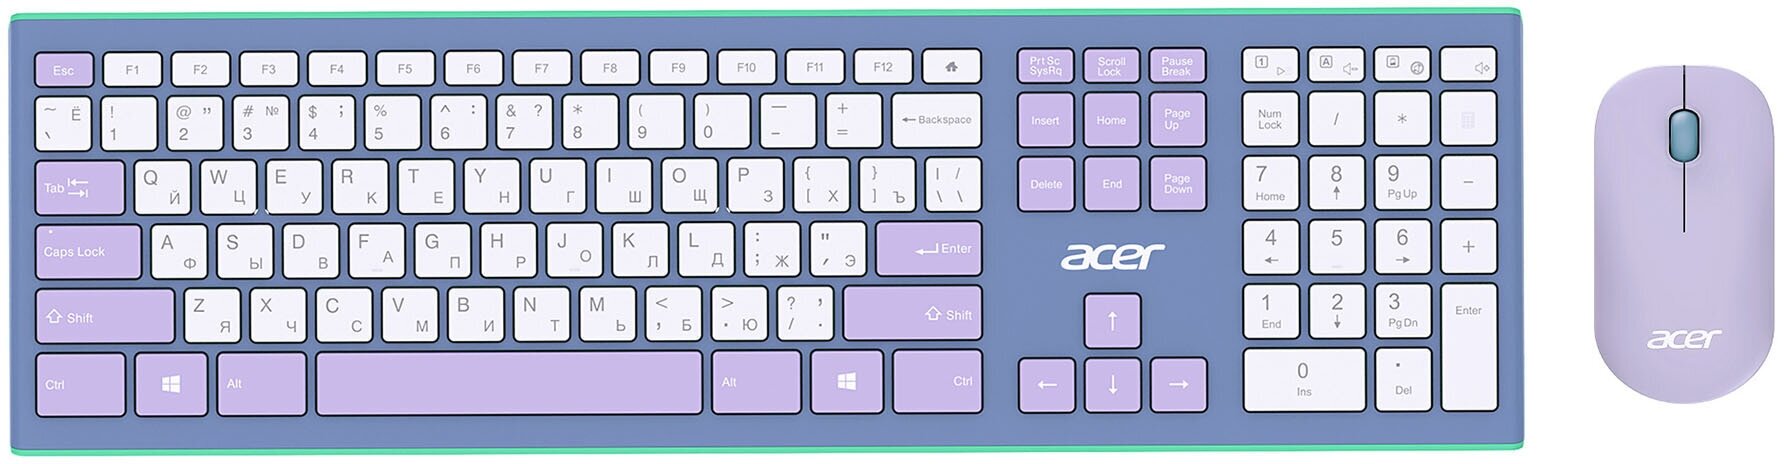 Клавиатура + мышь Acer OCC200 клав: зелёный/фиолетовый мышь: зелёный/фиолетовый USB беспроводная slim Multimedia